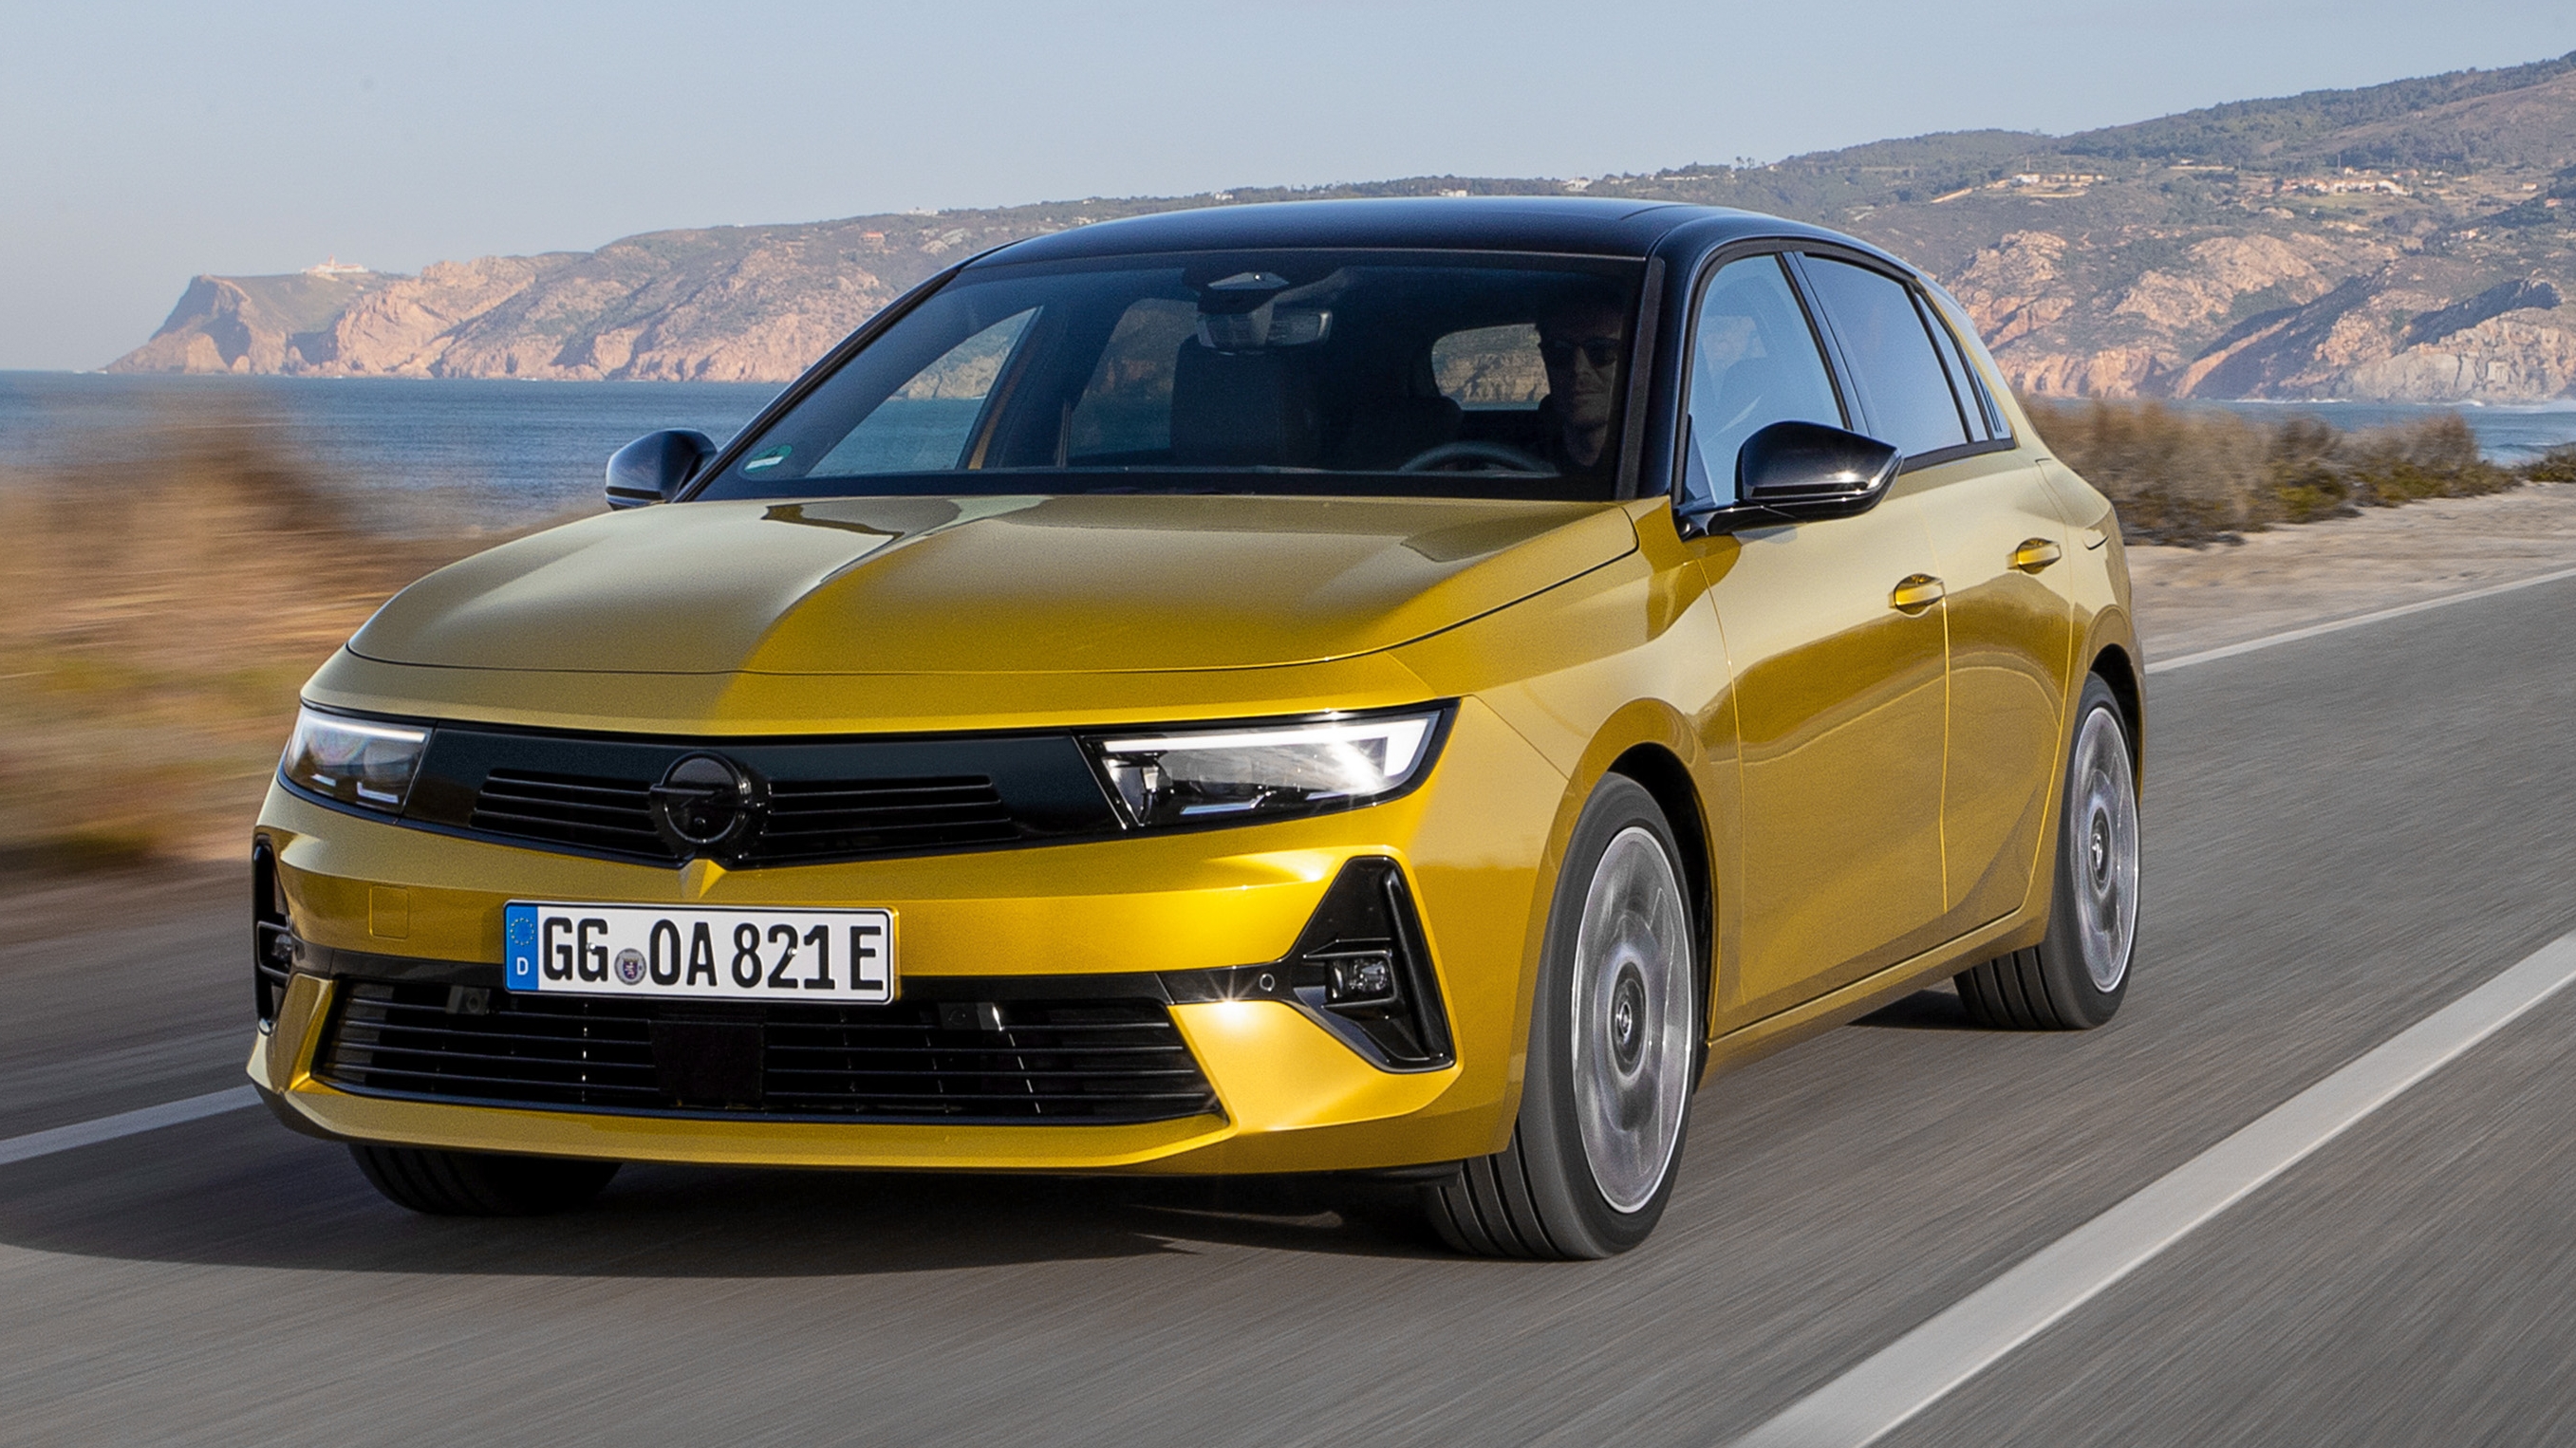 High-Tech Fahrwerk für den neuen Opel Astra (mit Bild)